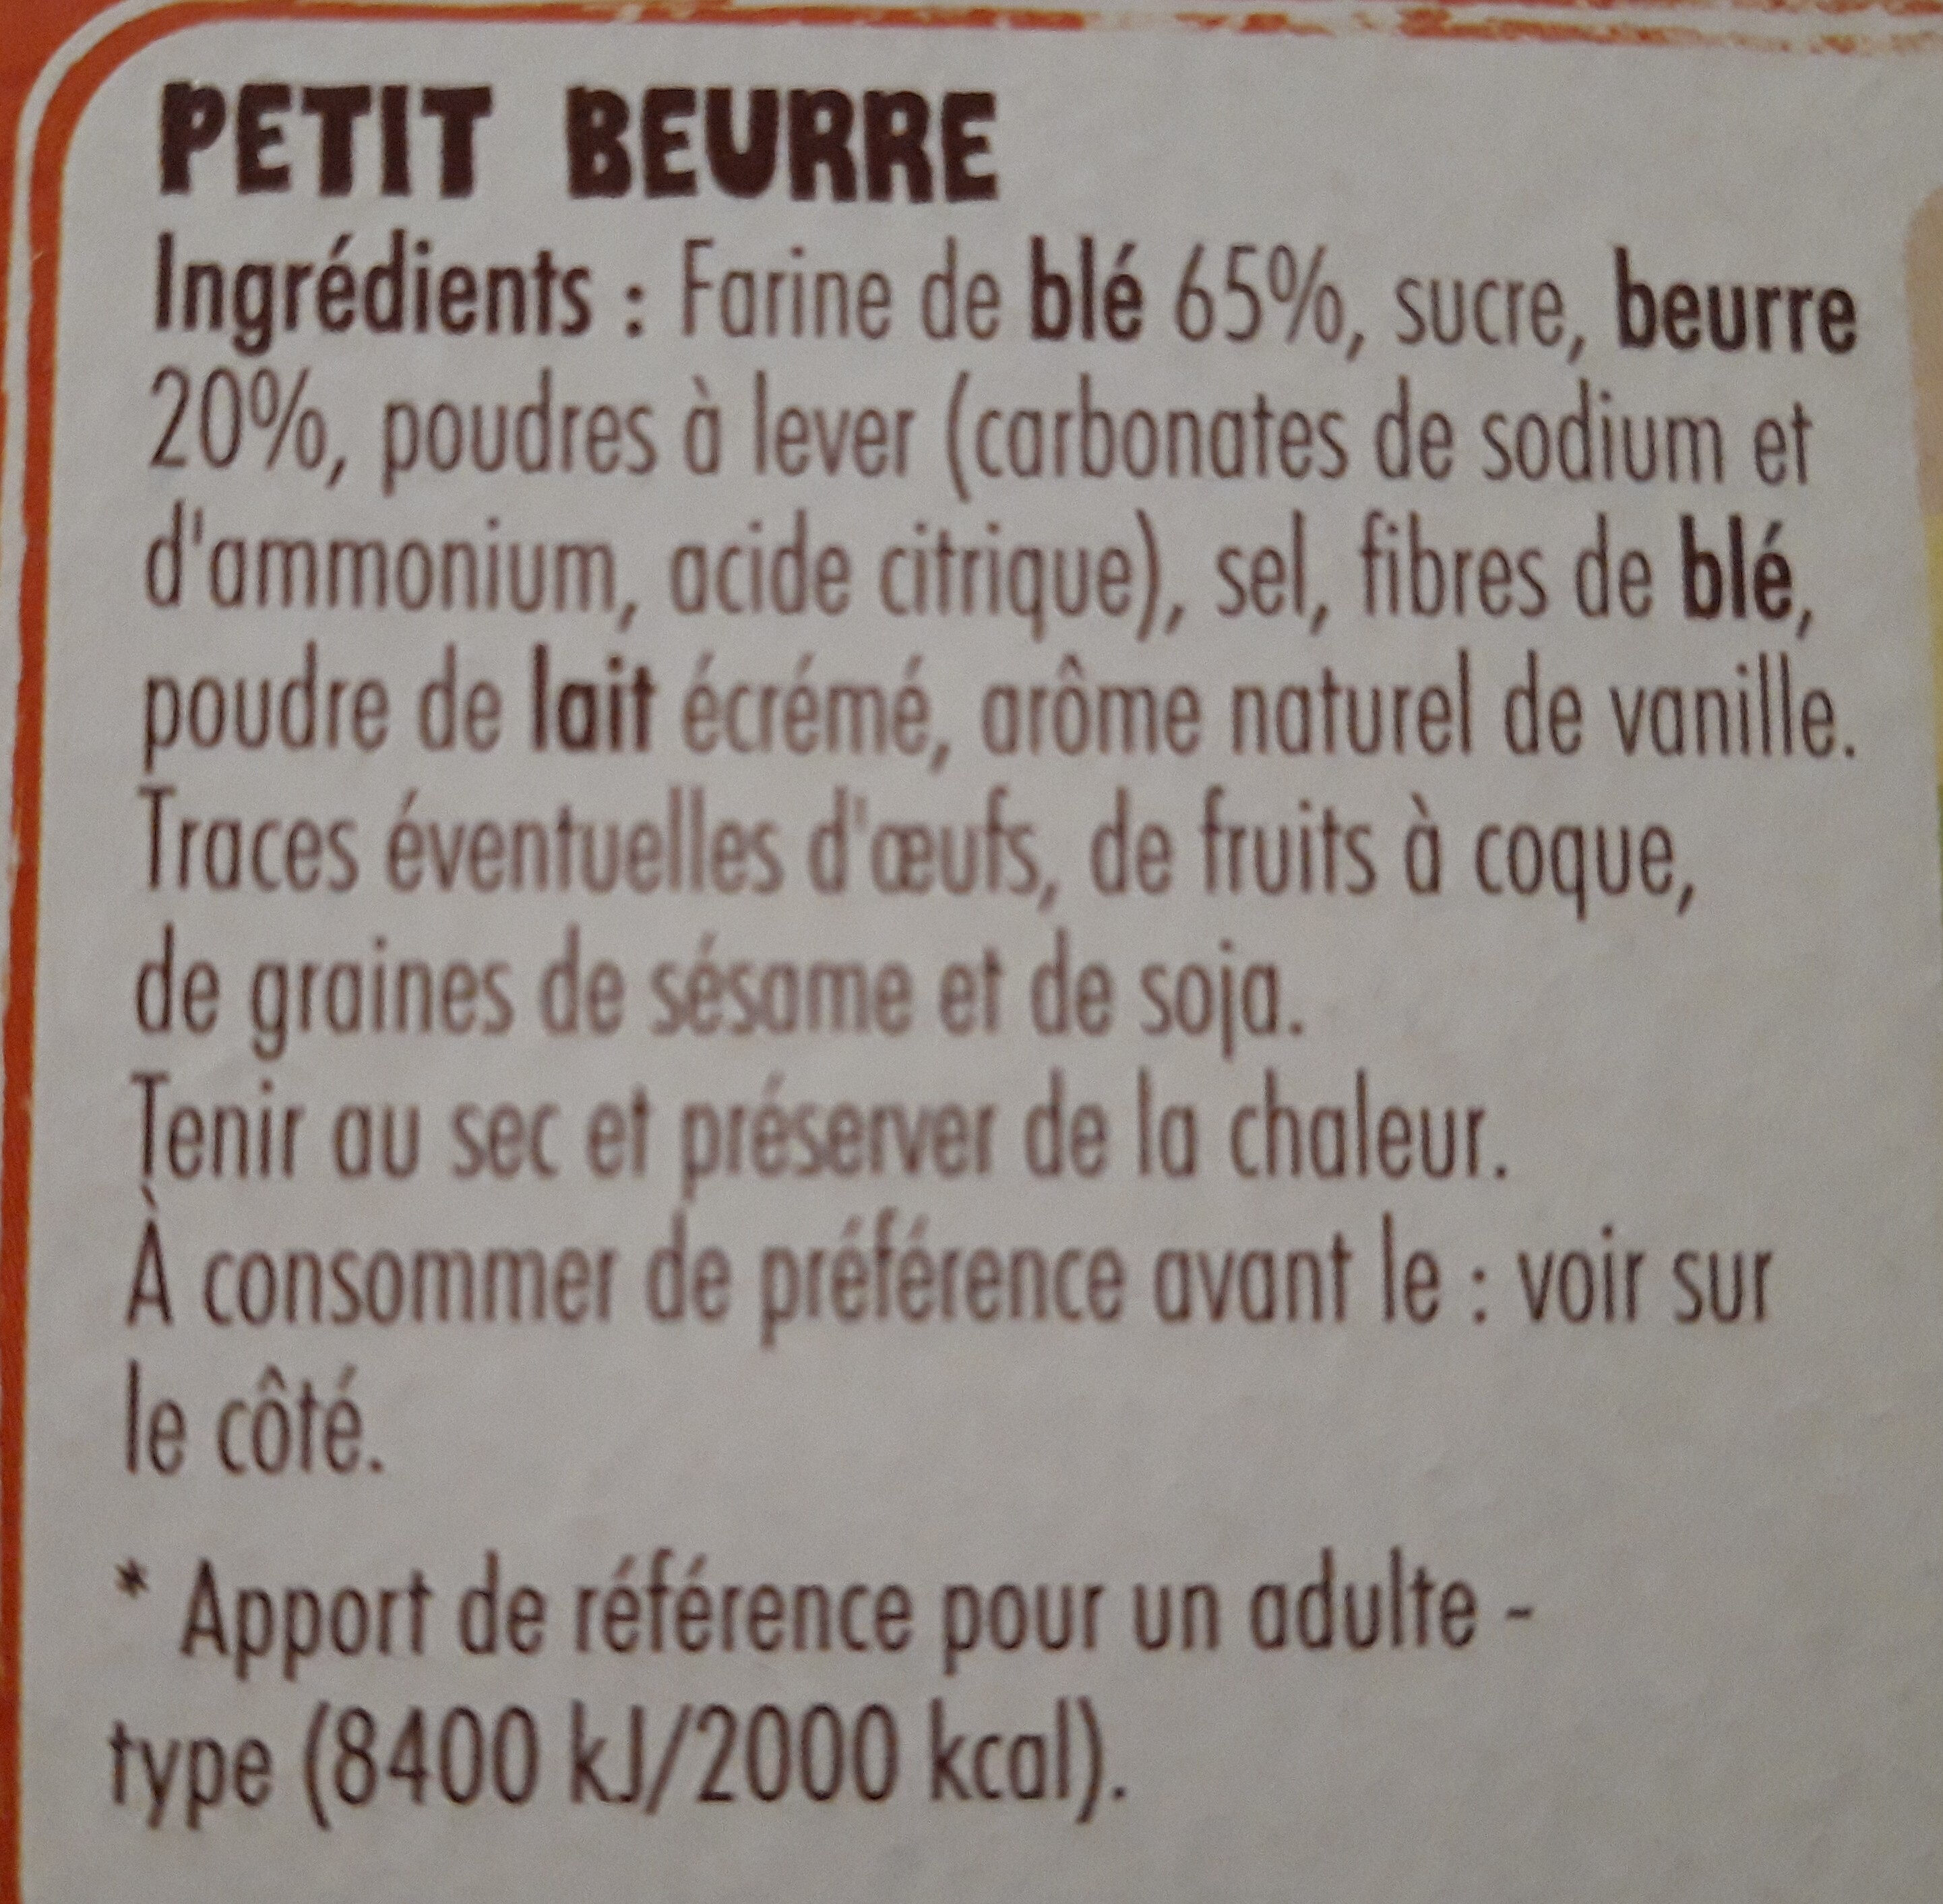 Le Petit St Michel - Petit beurre - Ingrediënten - fr